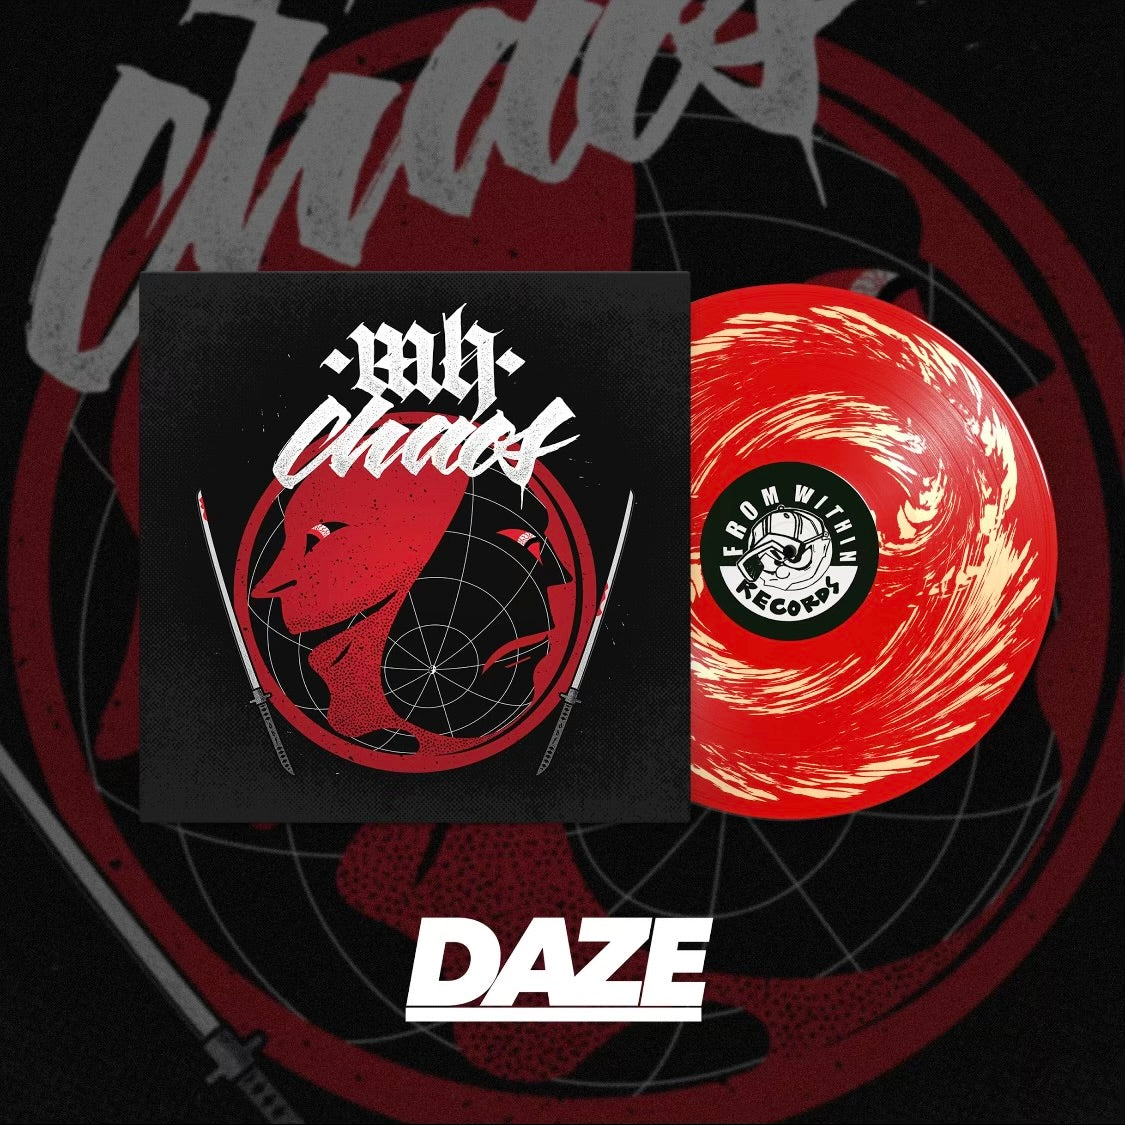 MH Chaos - S/T LP *DAZE Exclusive Variant*